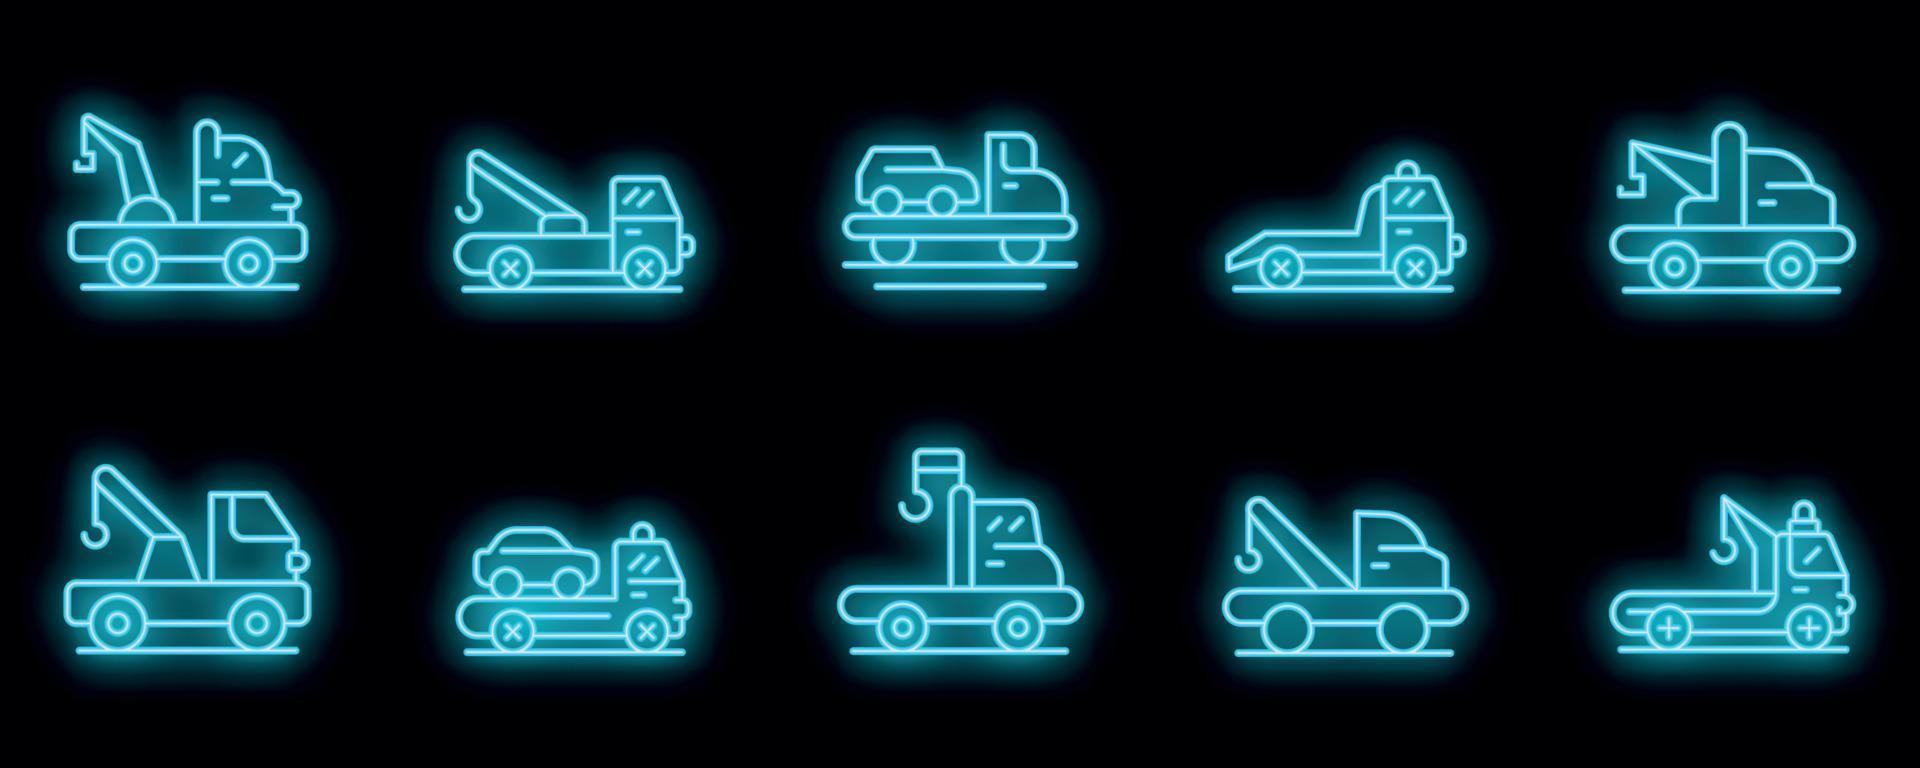 le icone del carro attrezzi impostano il neon vettoriale